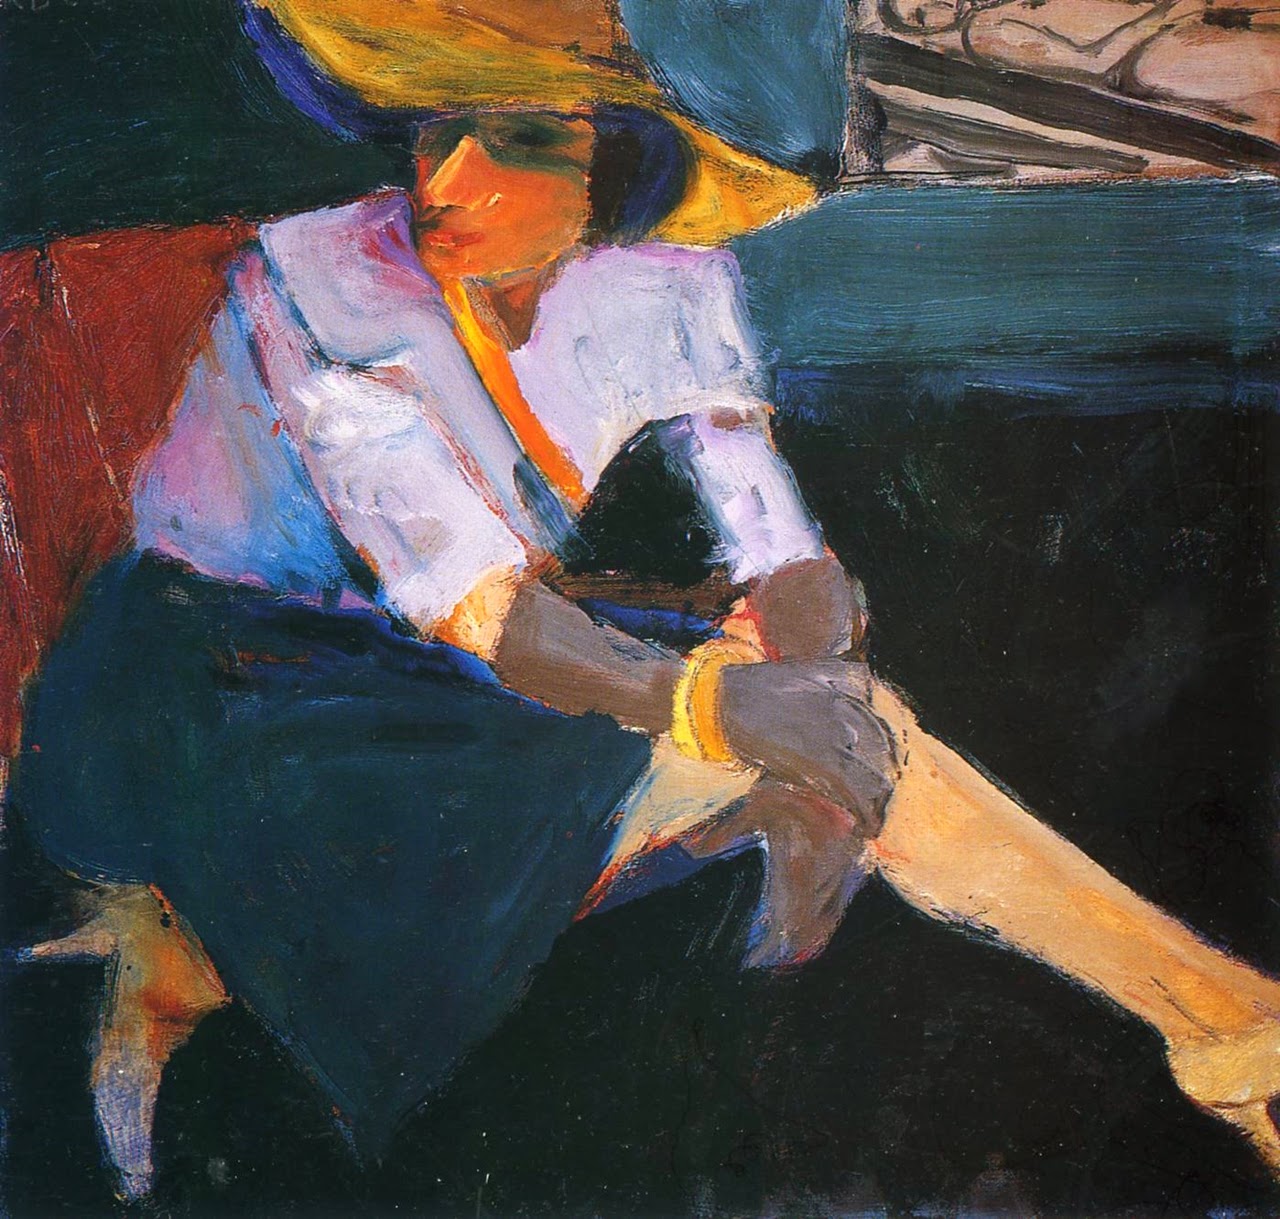 Richard Diebenkorn Abstract Expressionist Painter Tuttart